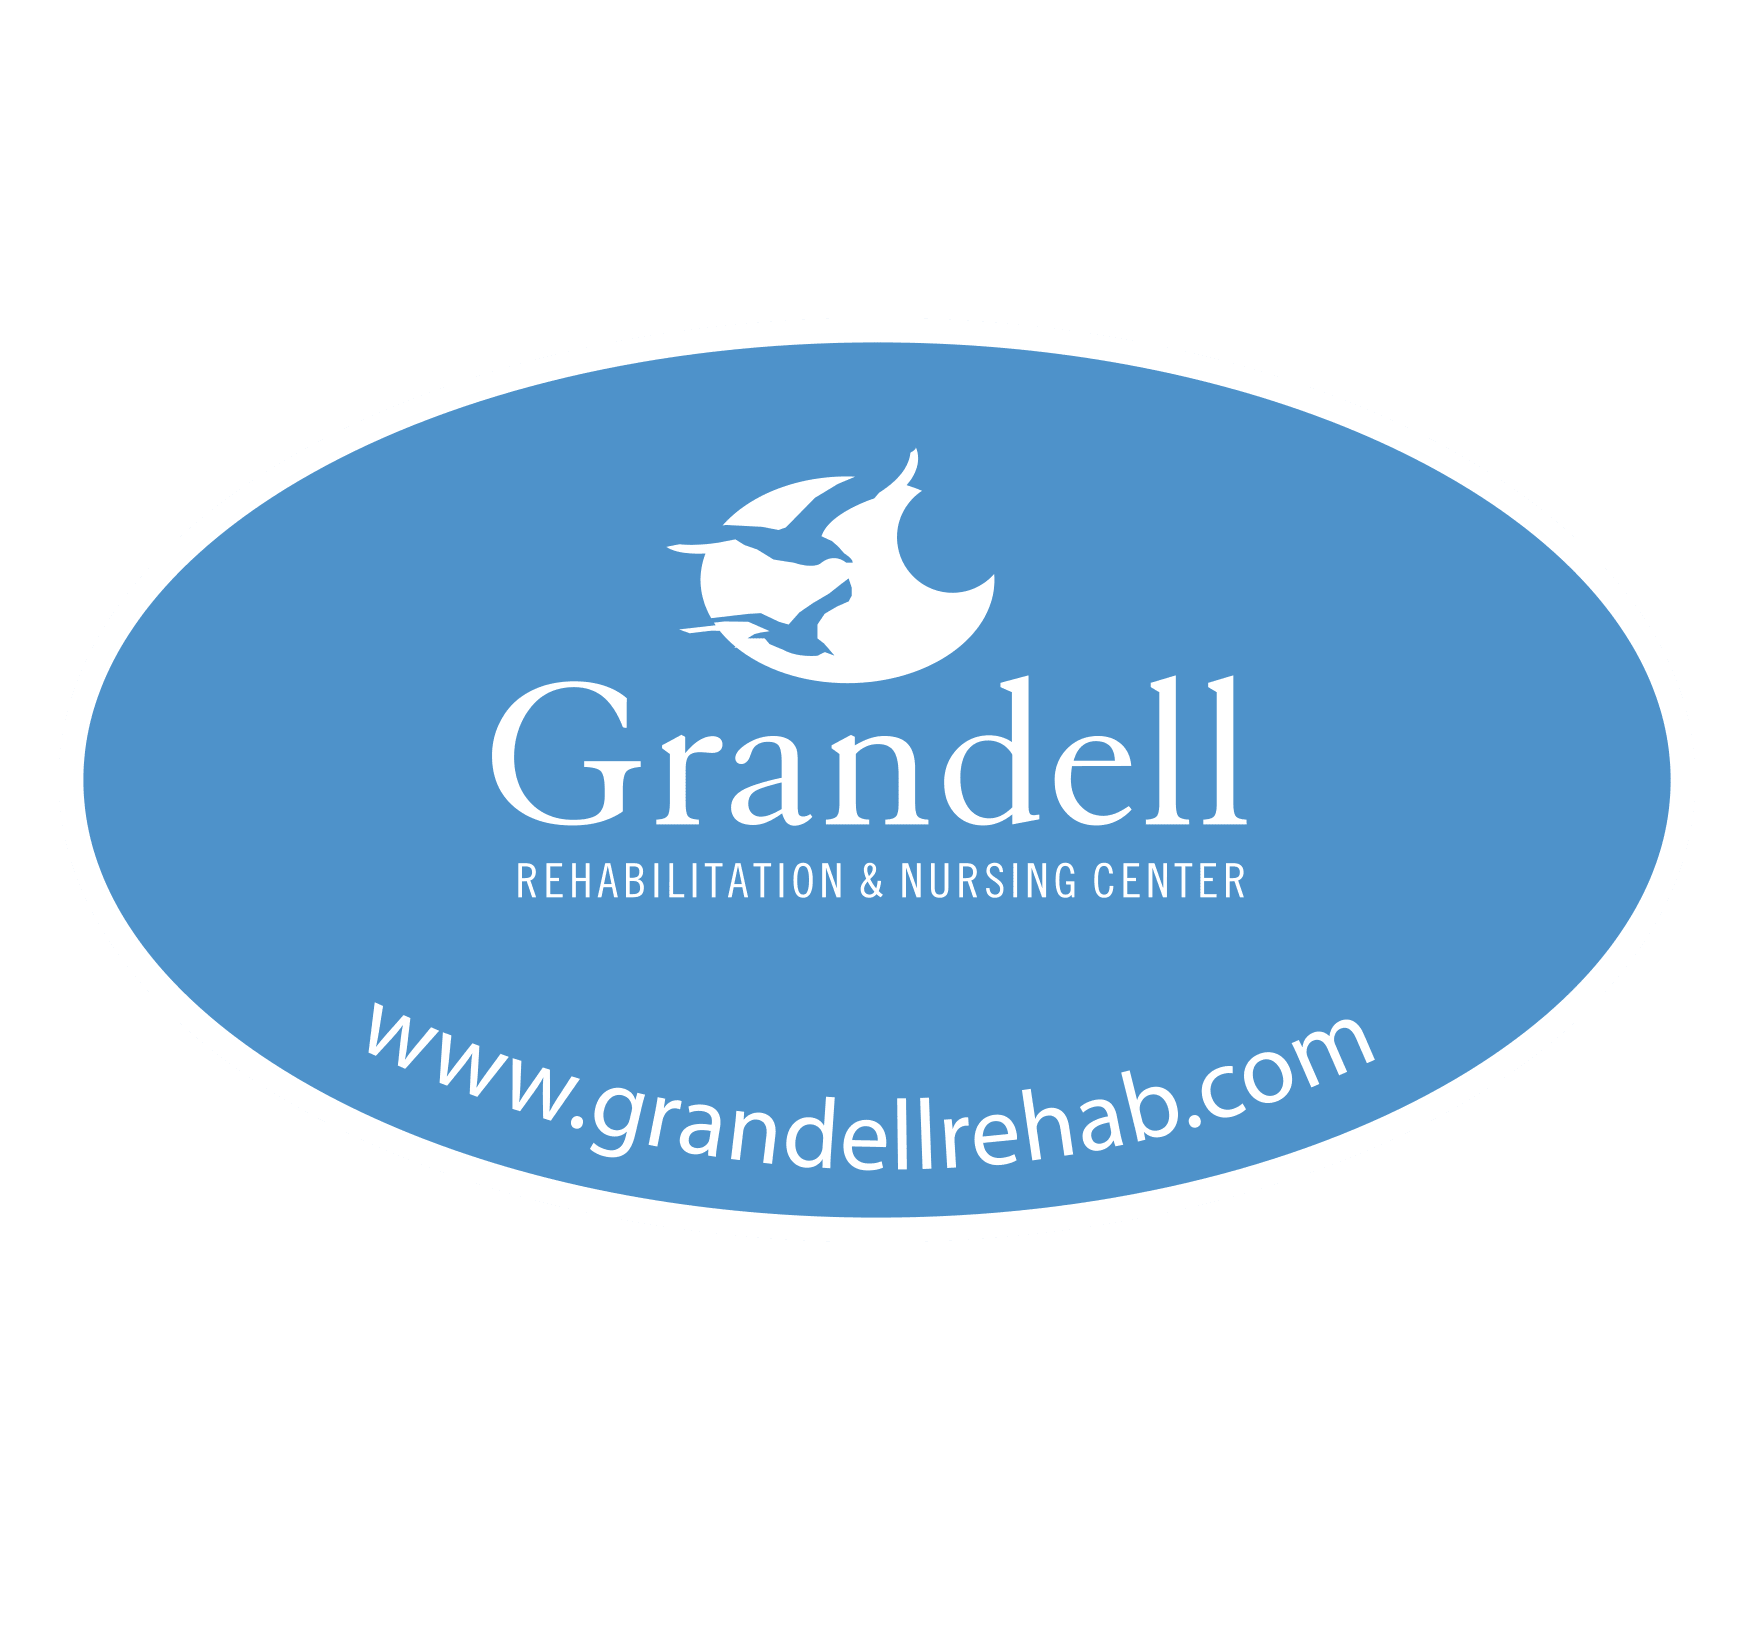 GrandellRehabNursing Logo